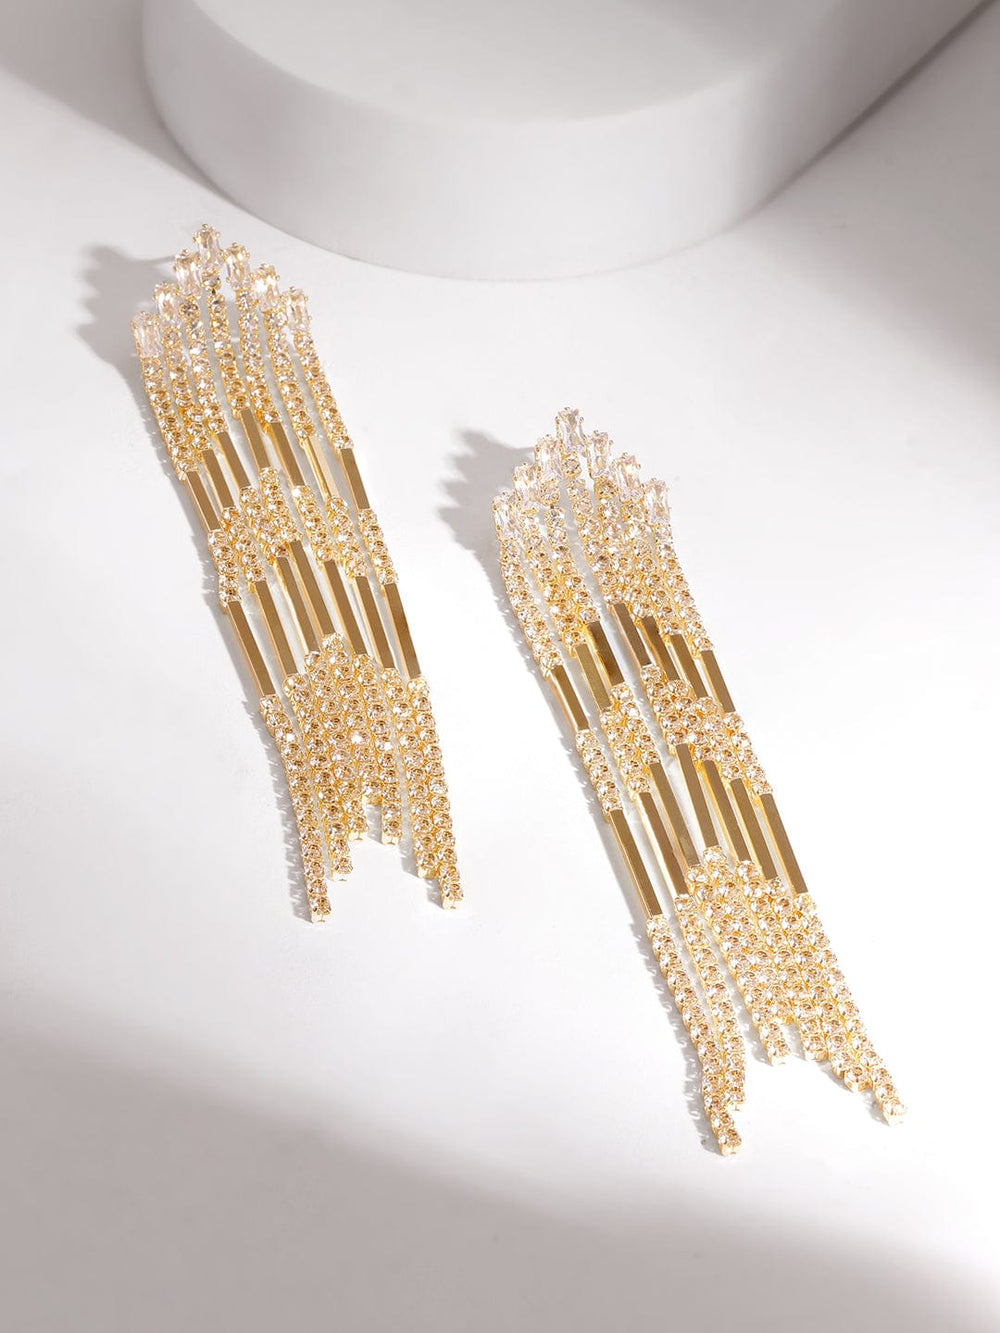 Rubans Voguish Women's 18KT Gold Plated Zircon Studded Shoulder Duster Earrings Drop Earrings